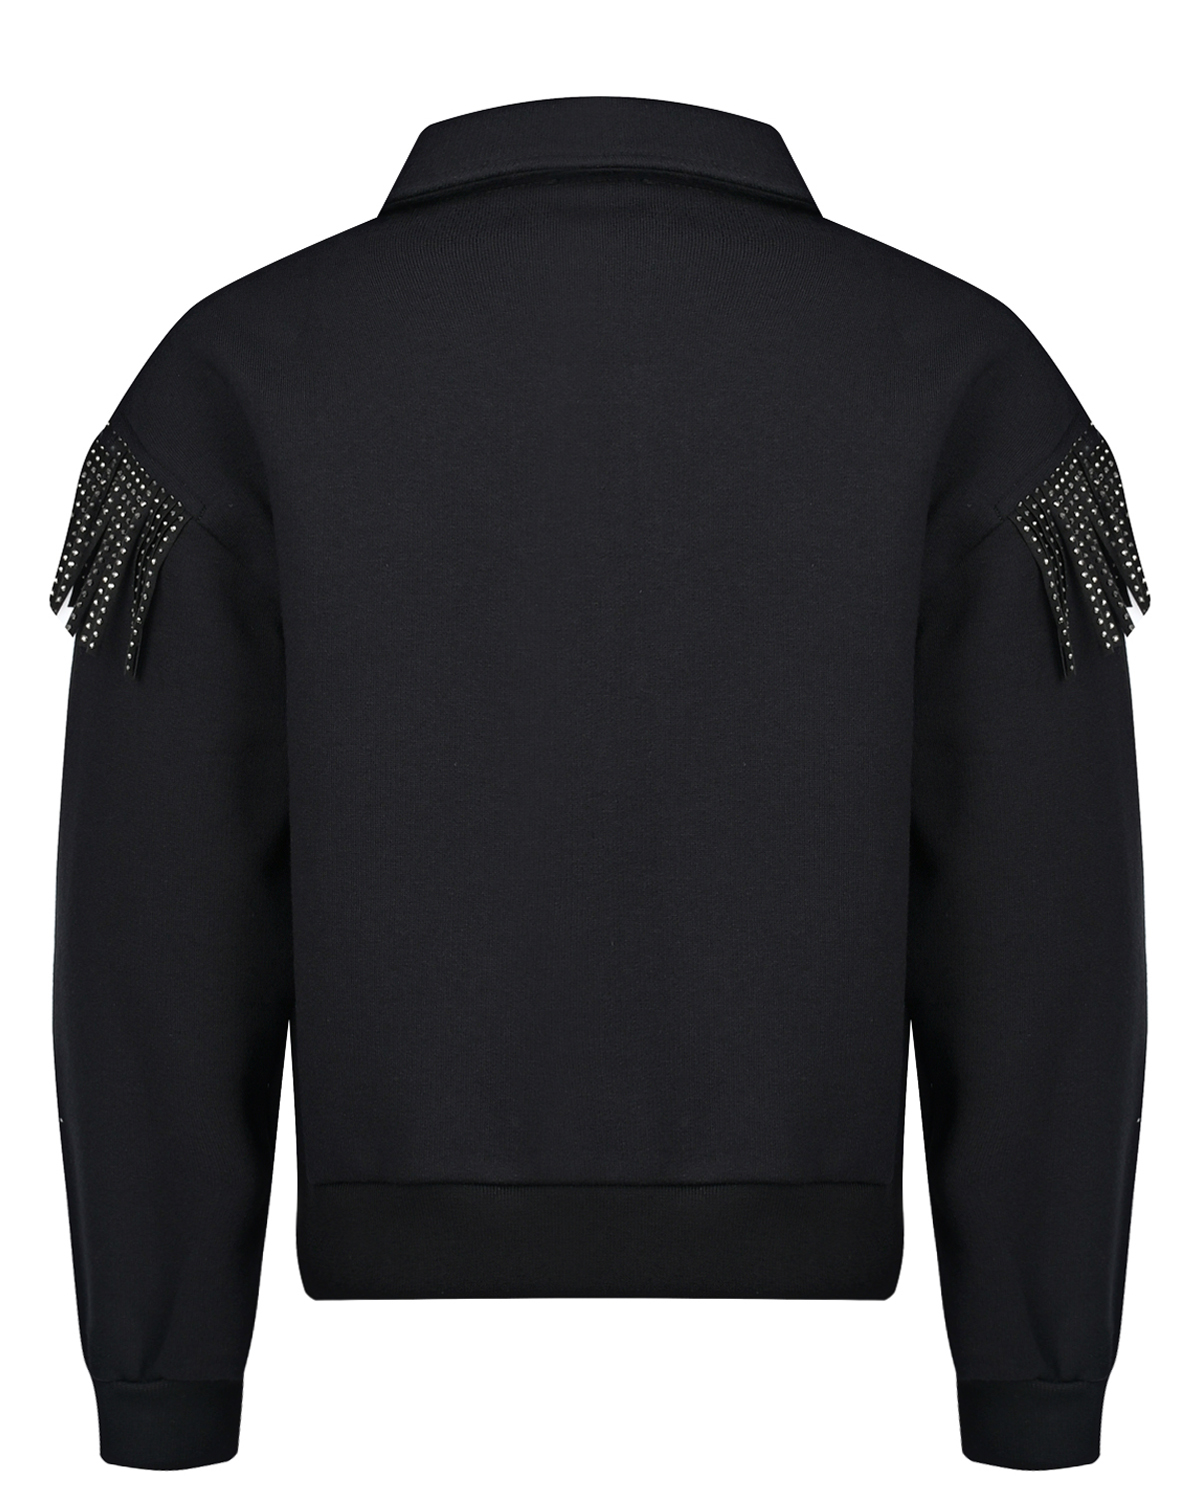 Черная спортивная куртка с бахромой из стразов Monnalisa детская, размер 140, цвет черный - фото 2